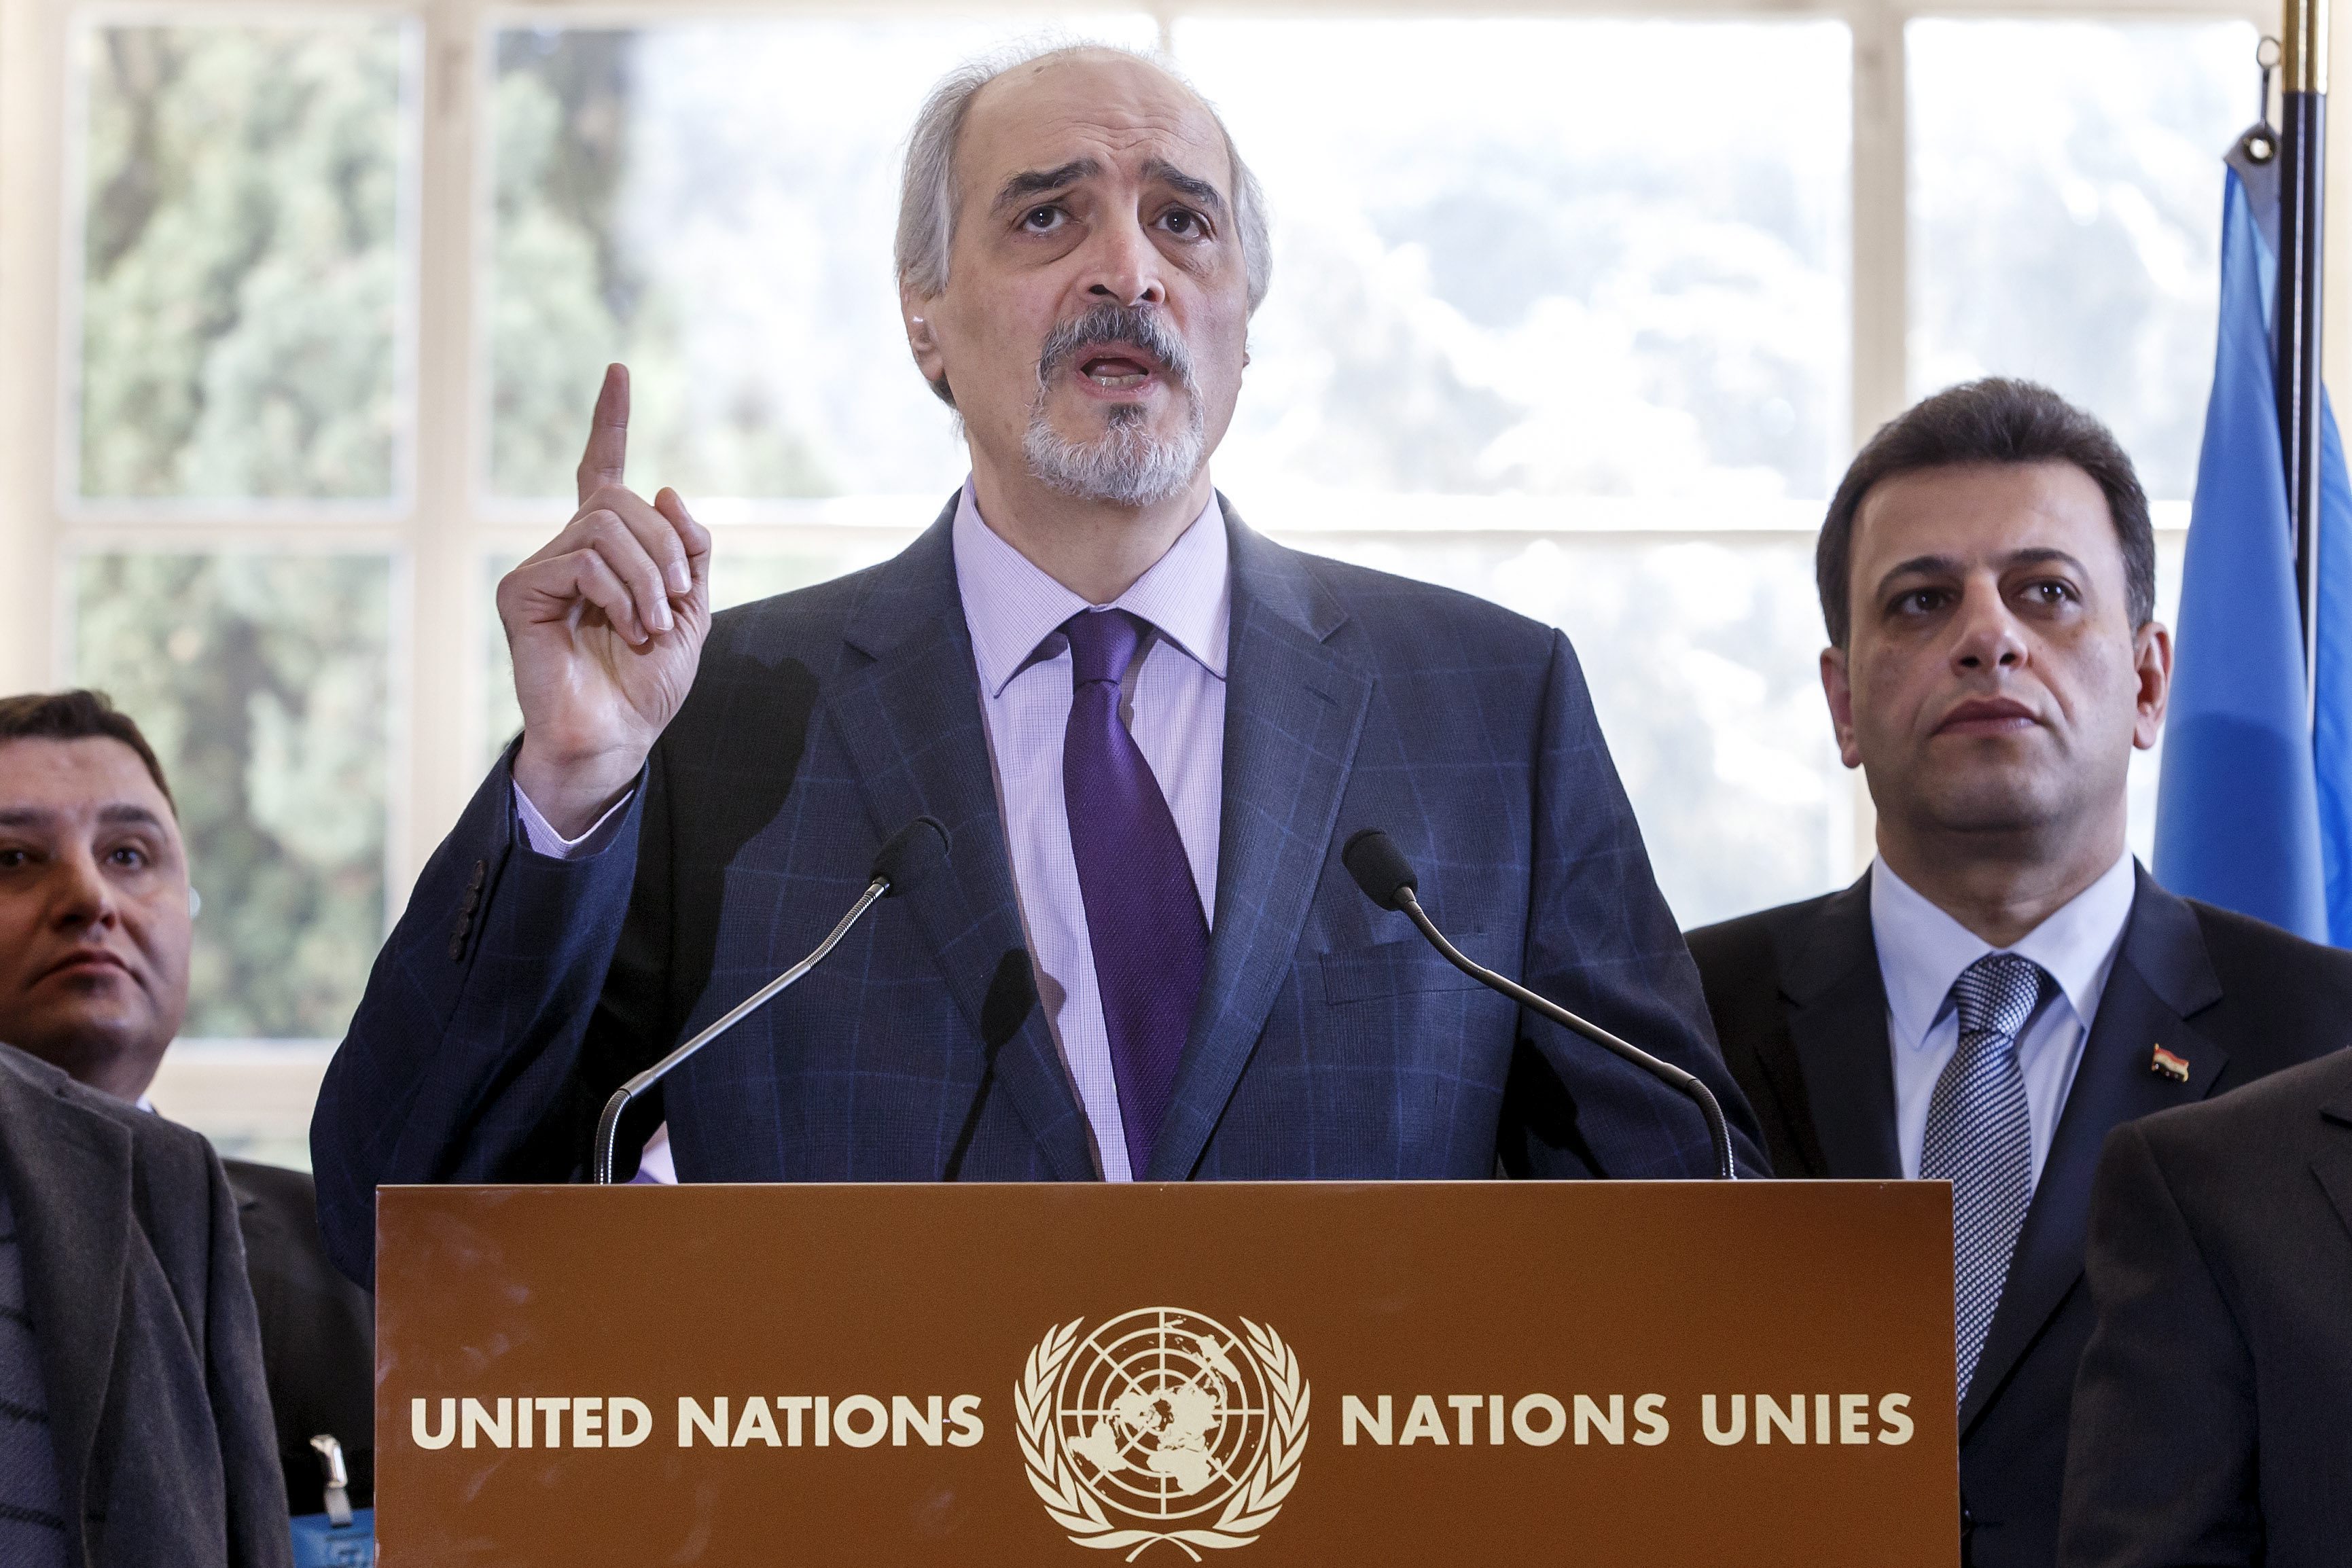 El pueblo sirio mira a las Naciones Unidas como una organización sin poder, al no ser neutral, afirmó Al-Jaafari.